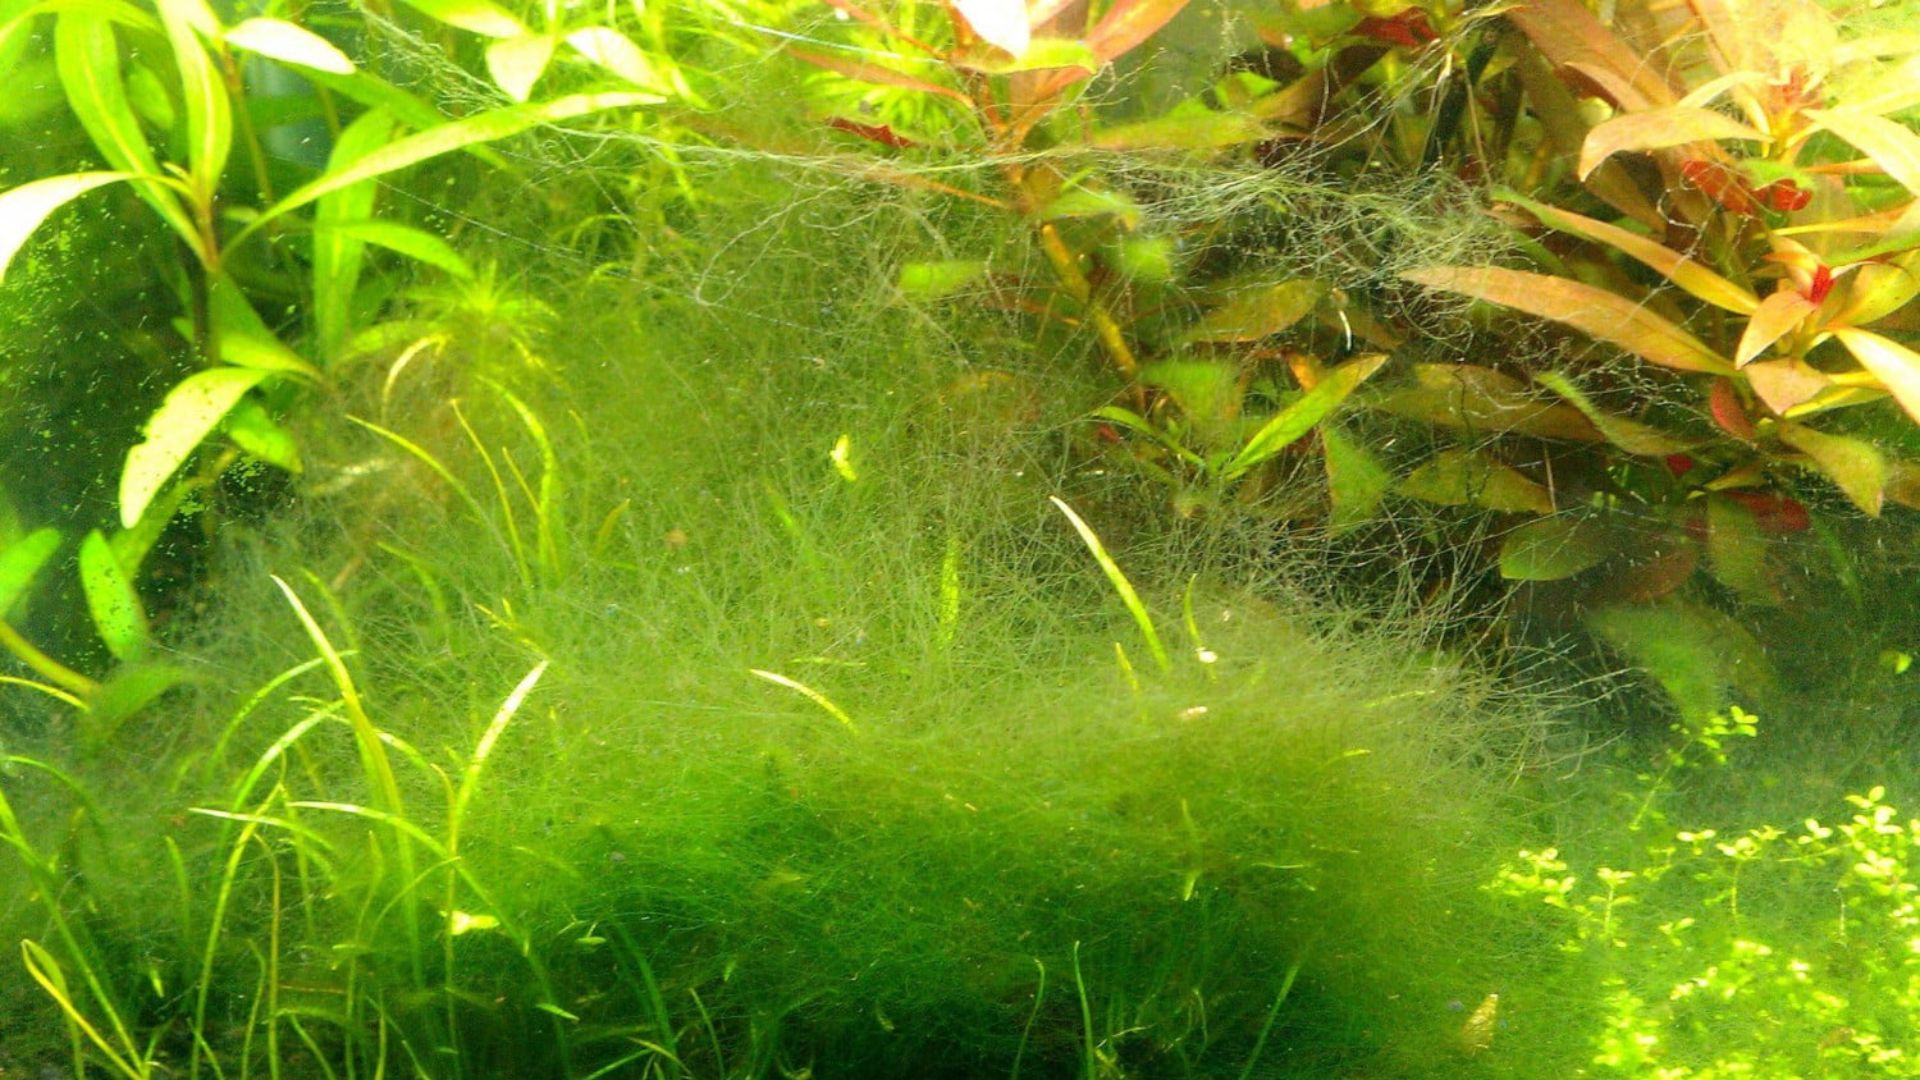 Rêu tóc xuất hiện rất nhiều trong bể và ống nước không che sáng gây nghẹt ống nước